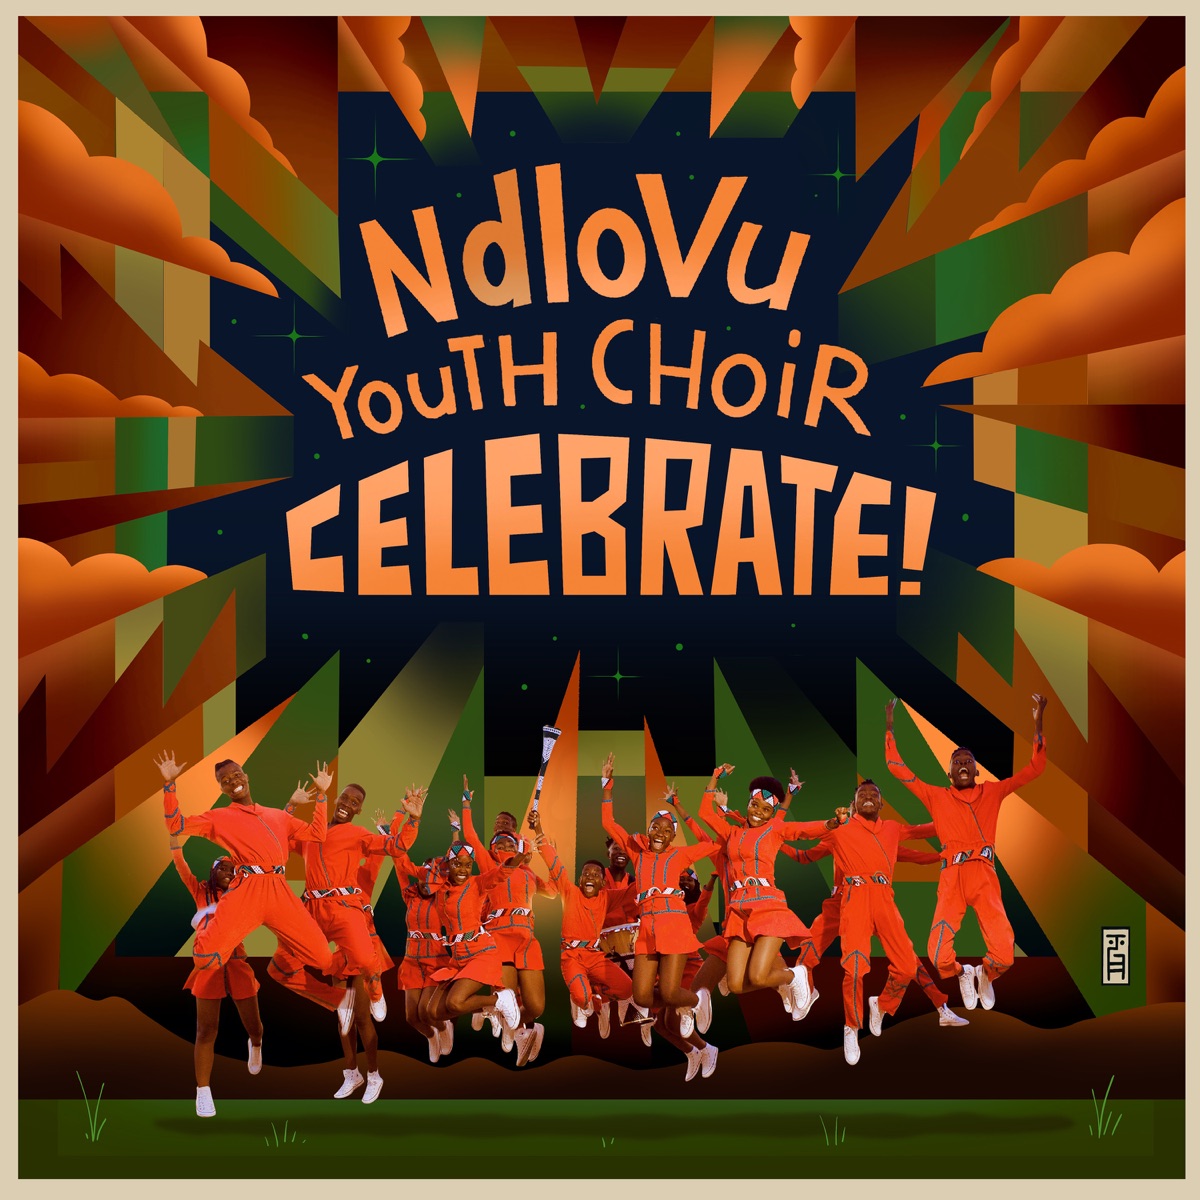 MP3: Ndlovu Youth Choir – Celebrate